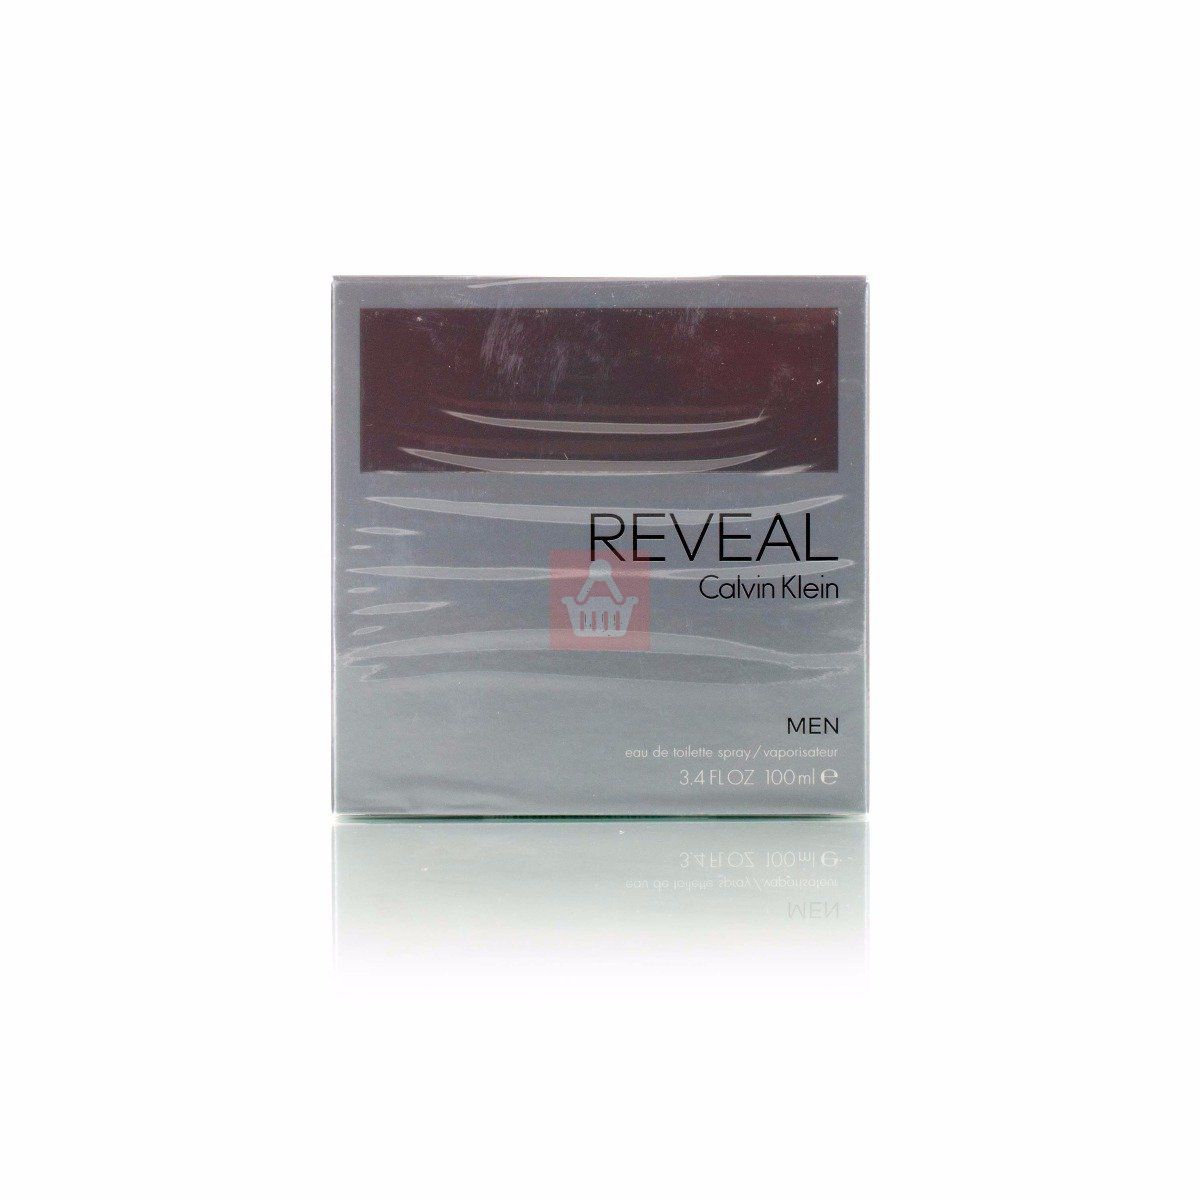 CALVIN KLEIN REVEAL For Men (BS) Perfume EDT - 100ml 3.4oz - Spray